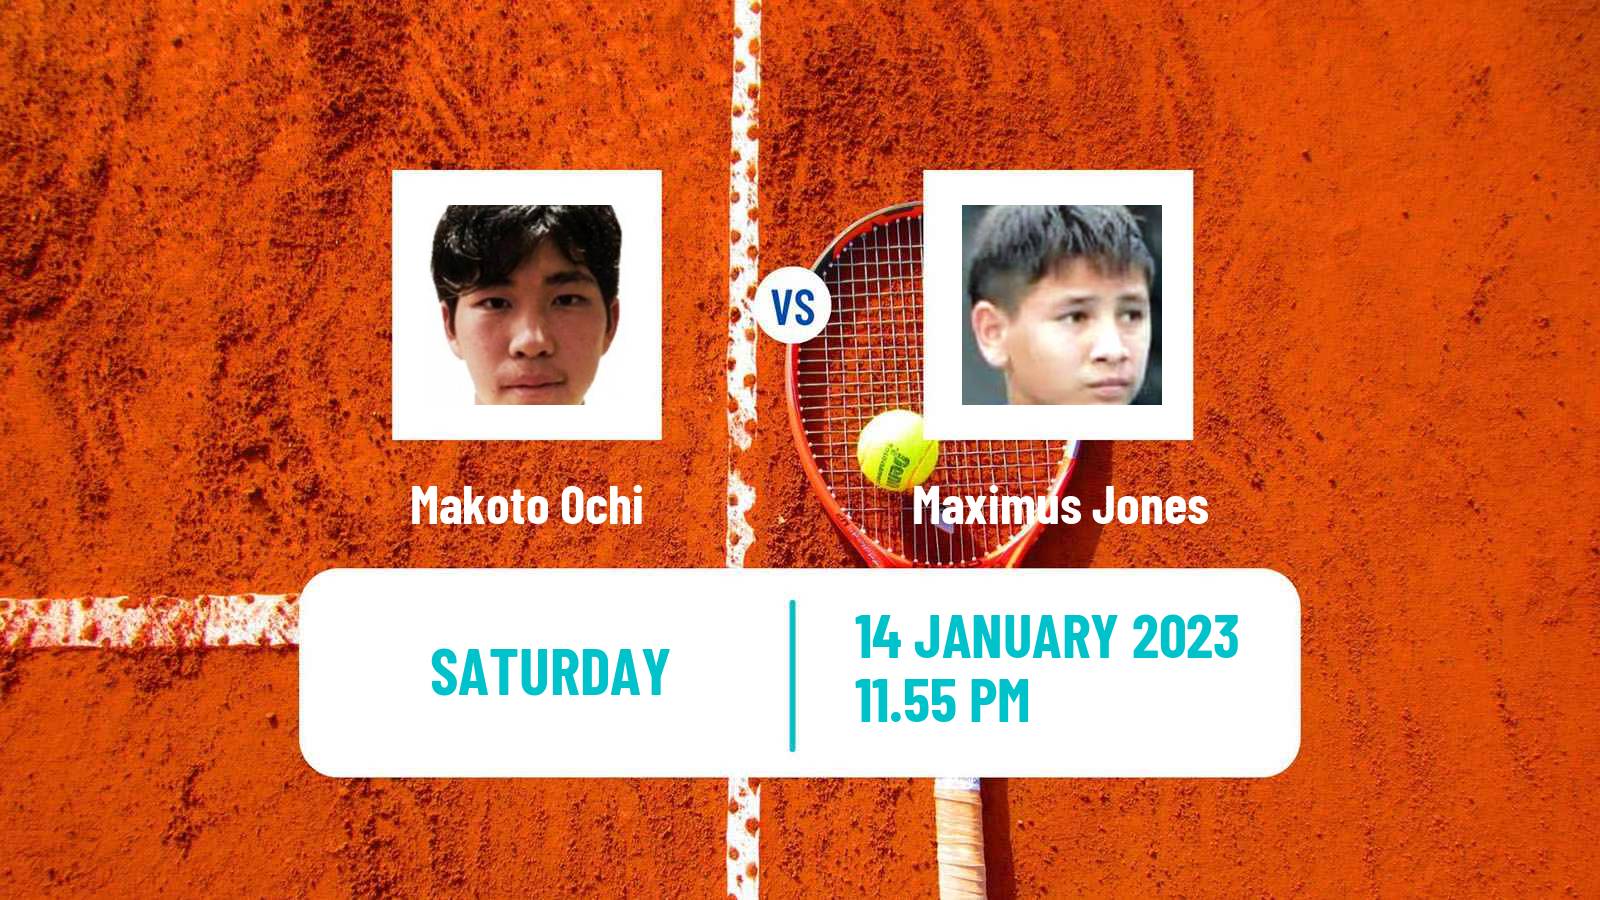 Tennis ATP Challenger Makoto Ochi - Maximus Jones